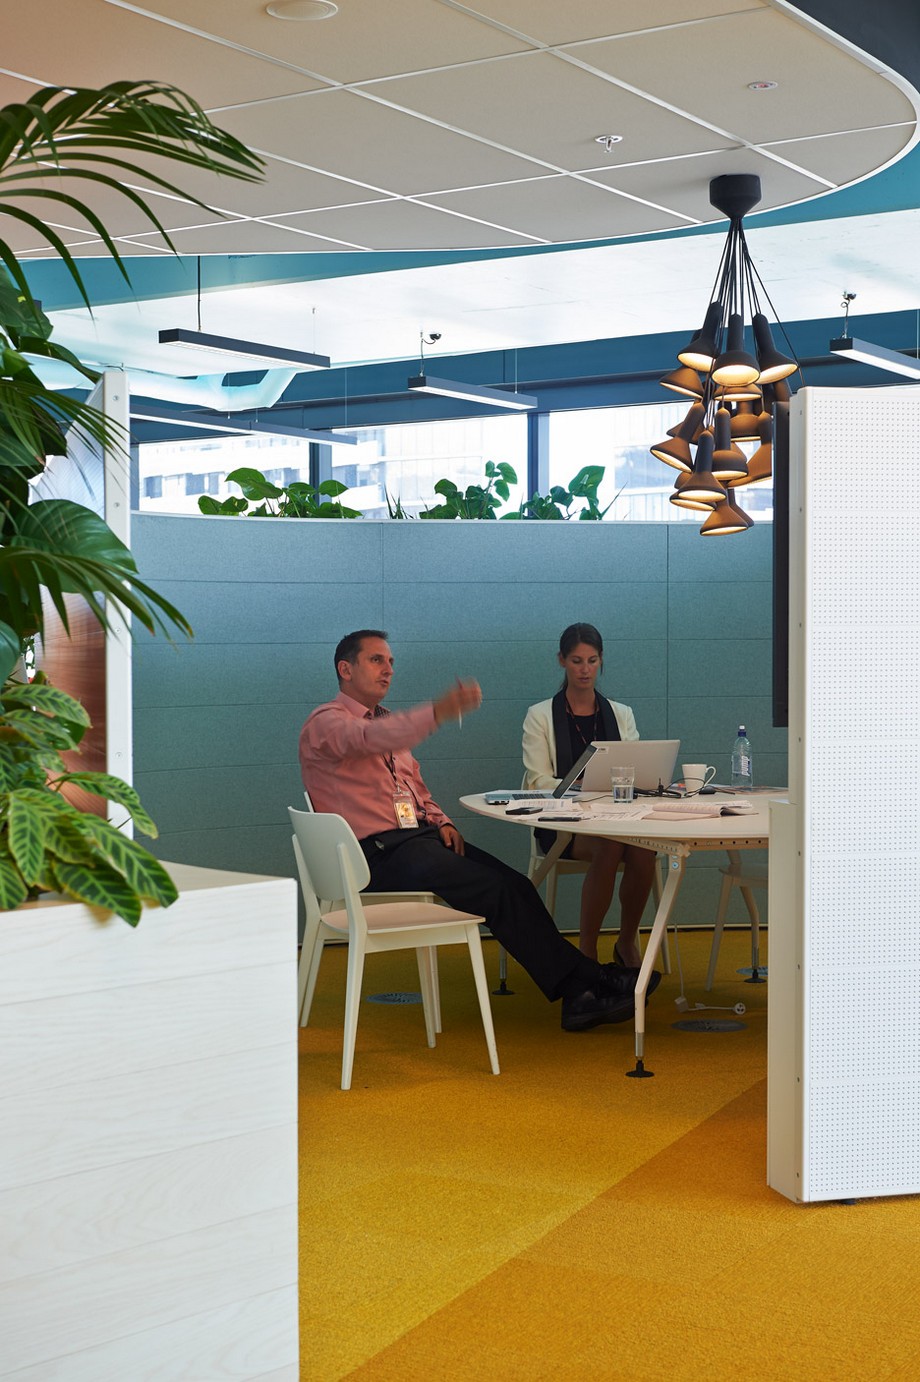 Dự án thiết kế không gian làm việc chung coworking space đẹp như mê cung > Thiết kế không gian làm việc chung với đầy đủ góc ngồi khá riêng tư